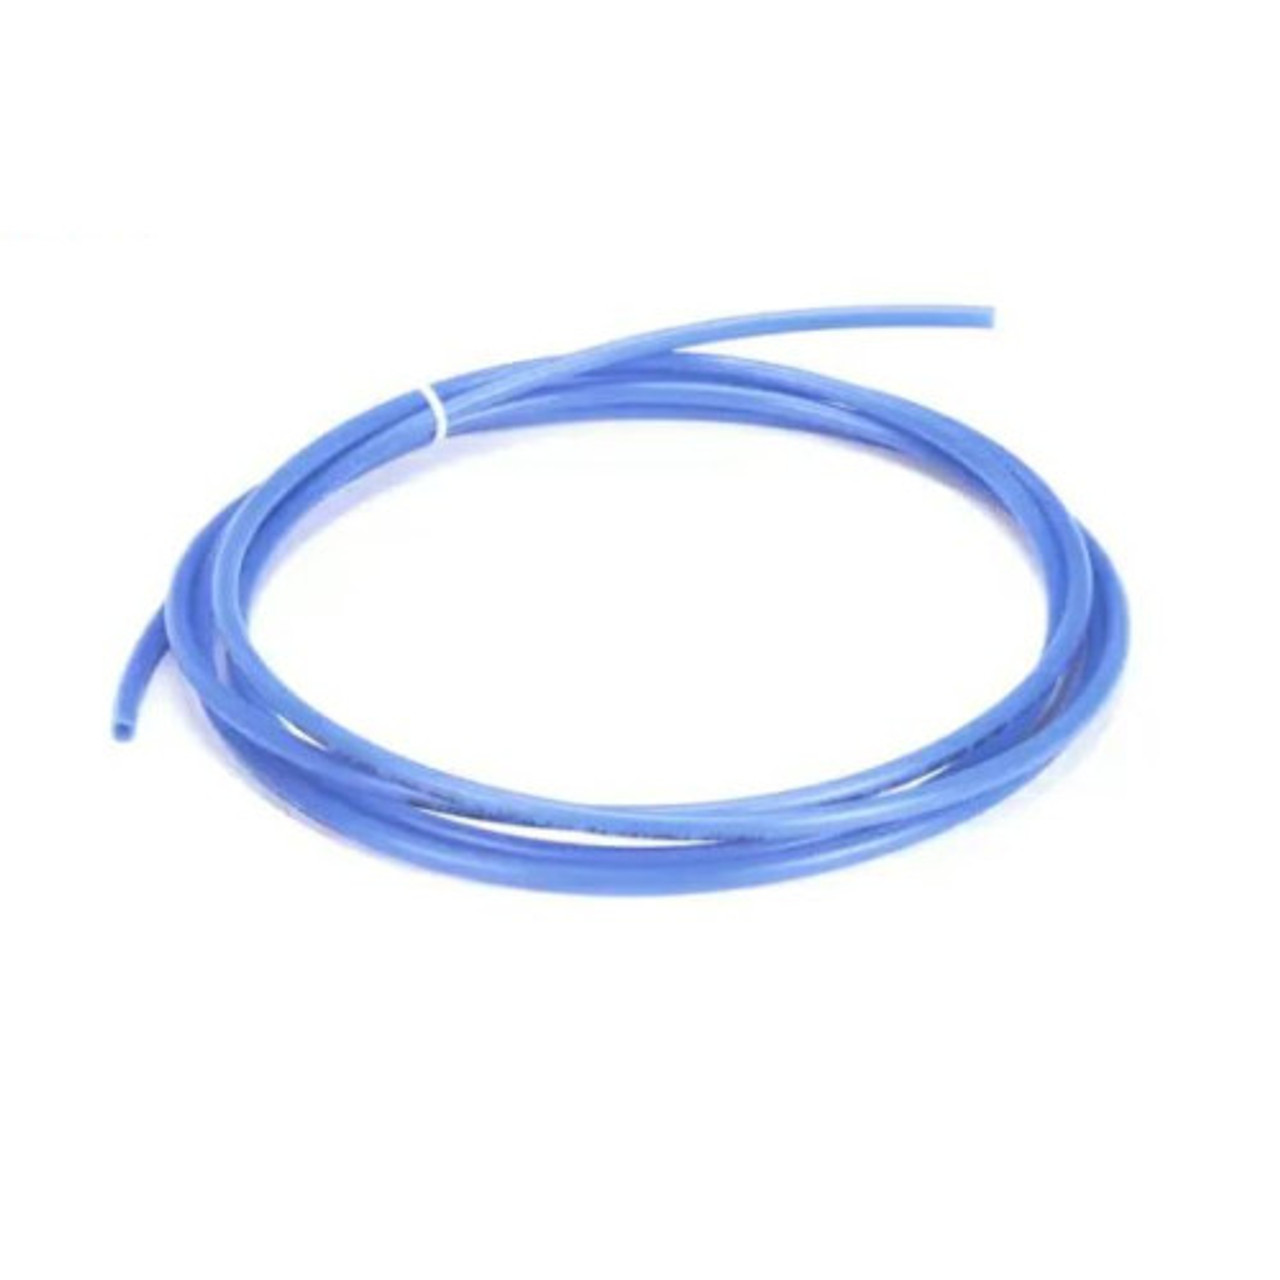 Jackson 057000113717 - Tubing, 1/4 X 120 Blue